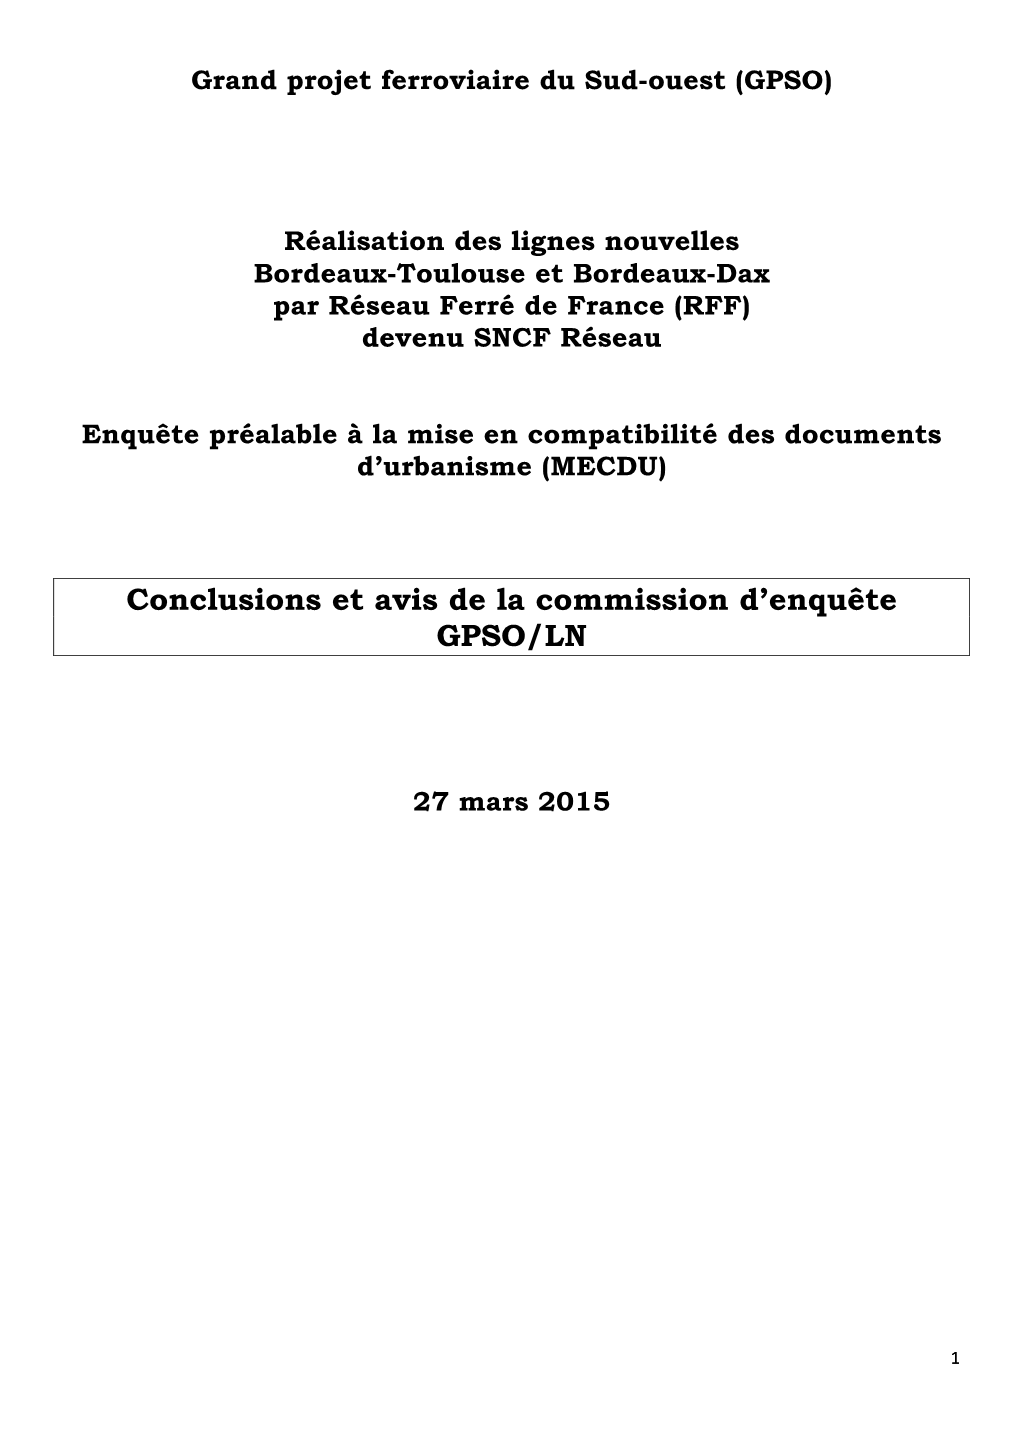 Conclusions Et Avis De La Commission D'enquête GPSO/LN